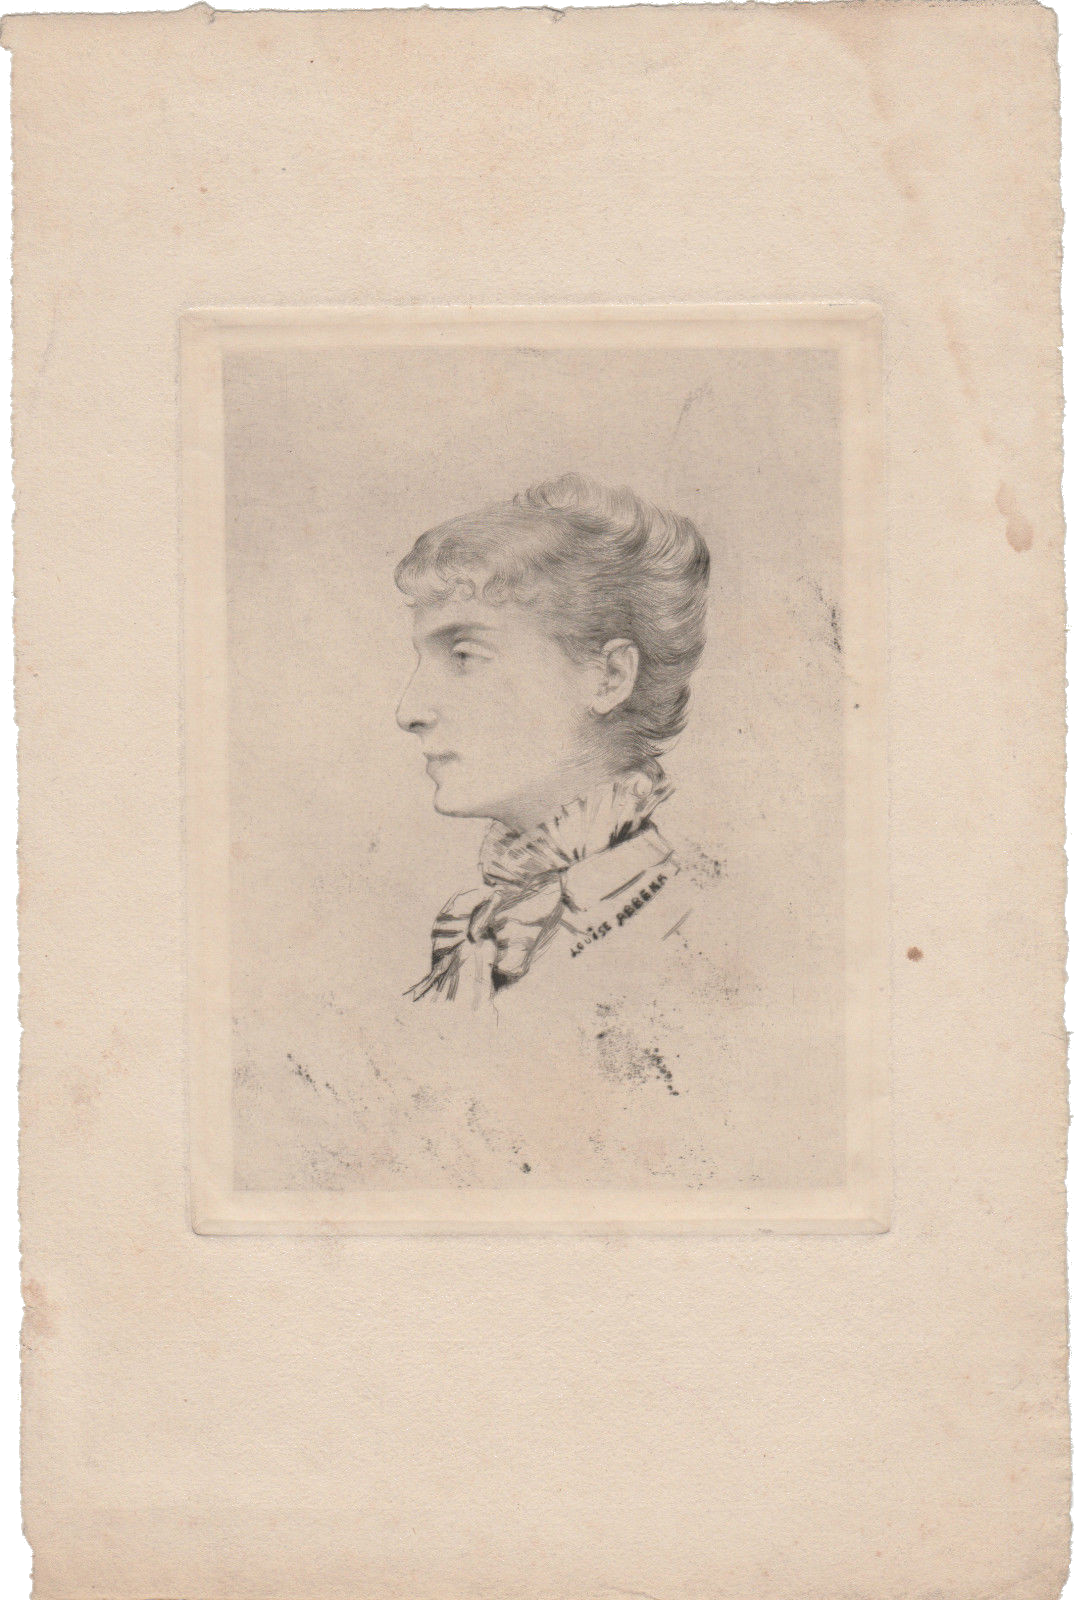 Louise Abbéma: Portrait deSarah Bernhardt (pointe sèche, 1880)